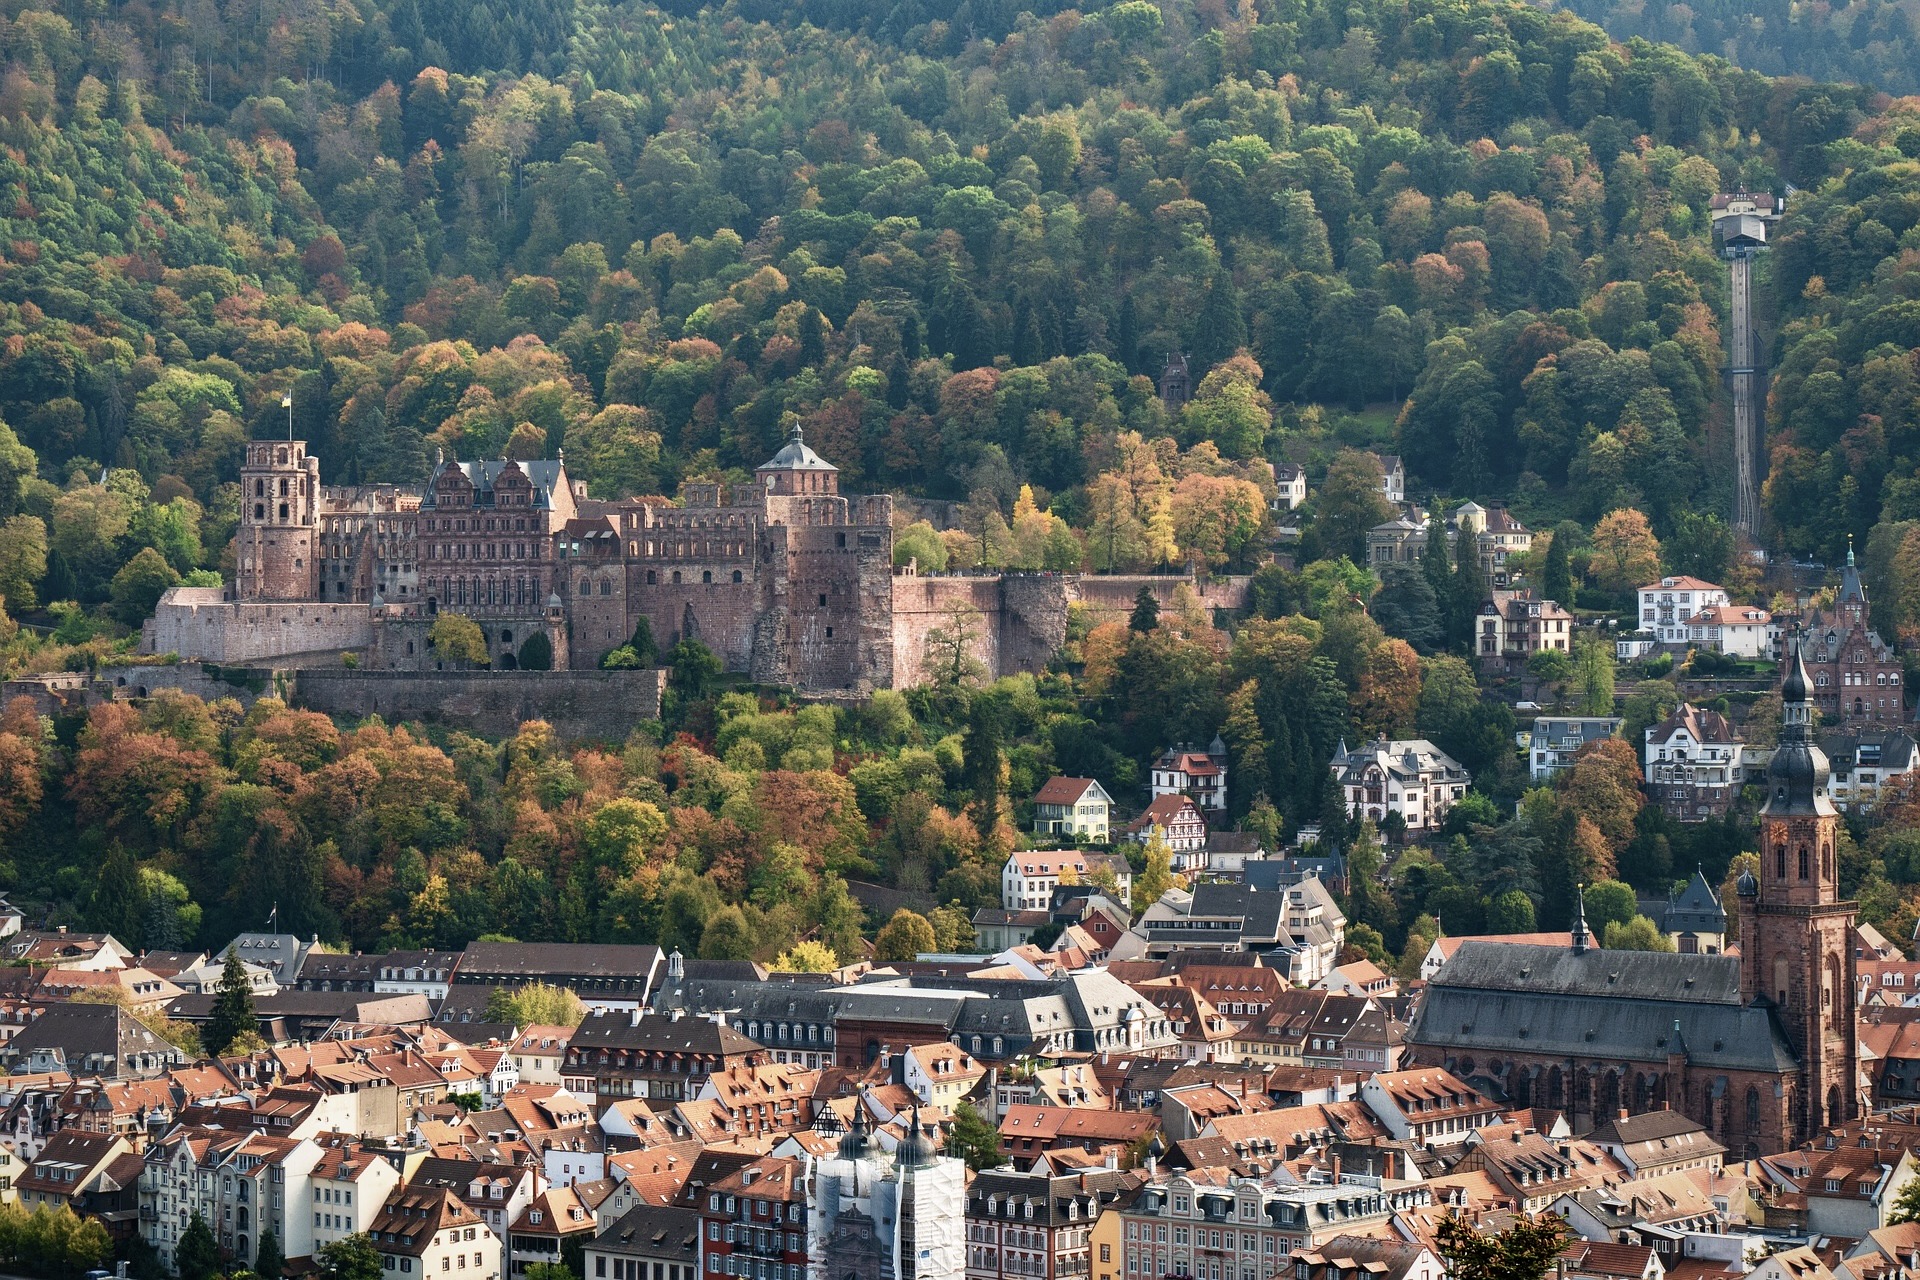 Schloss Heidelberg ist eine der meistbesuchten Highlights und Sehenswürdigkeiten in Baden-Württemberg